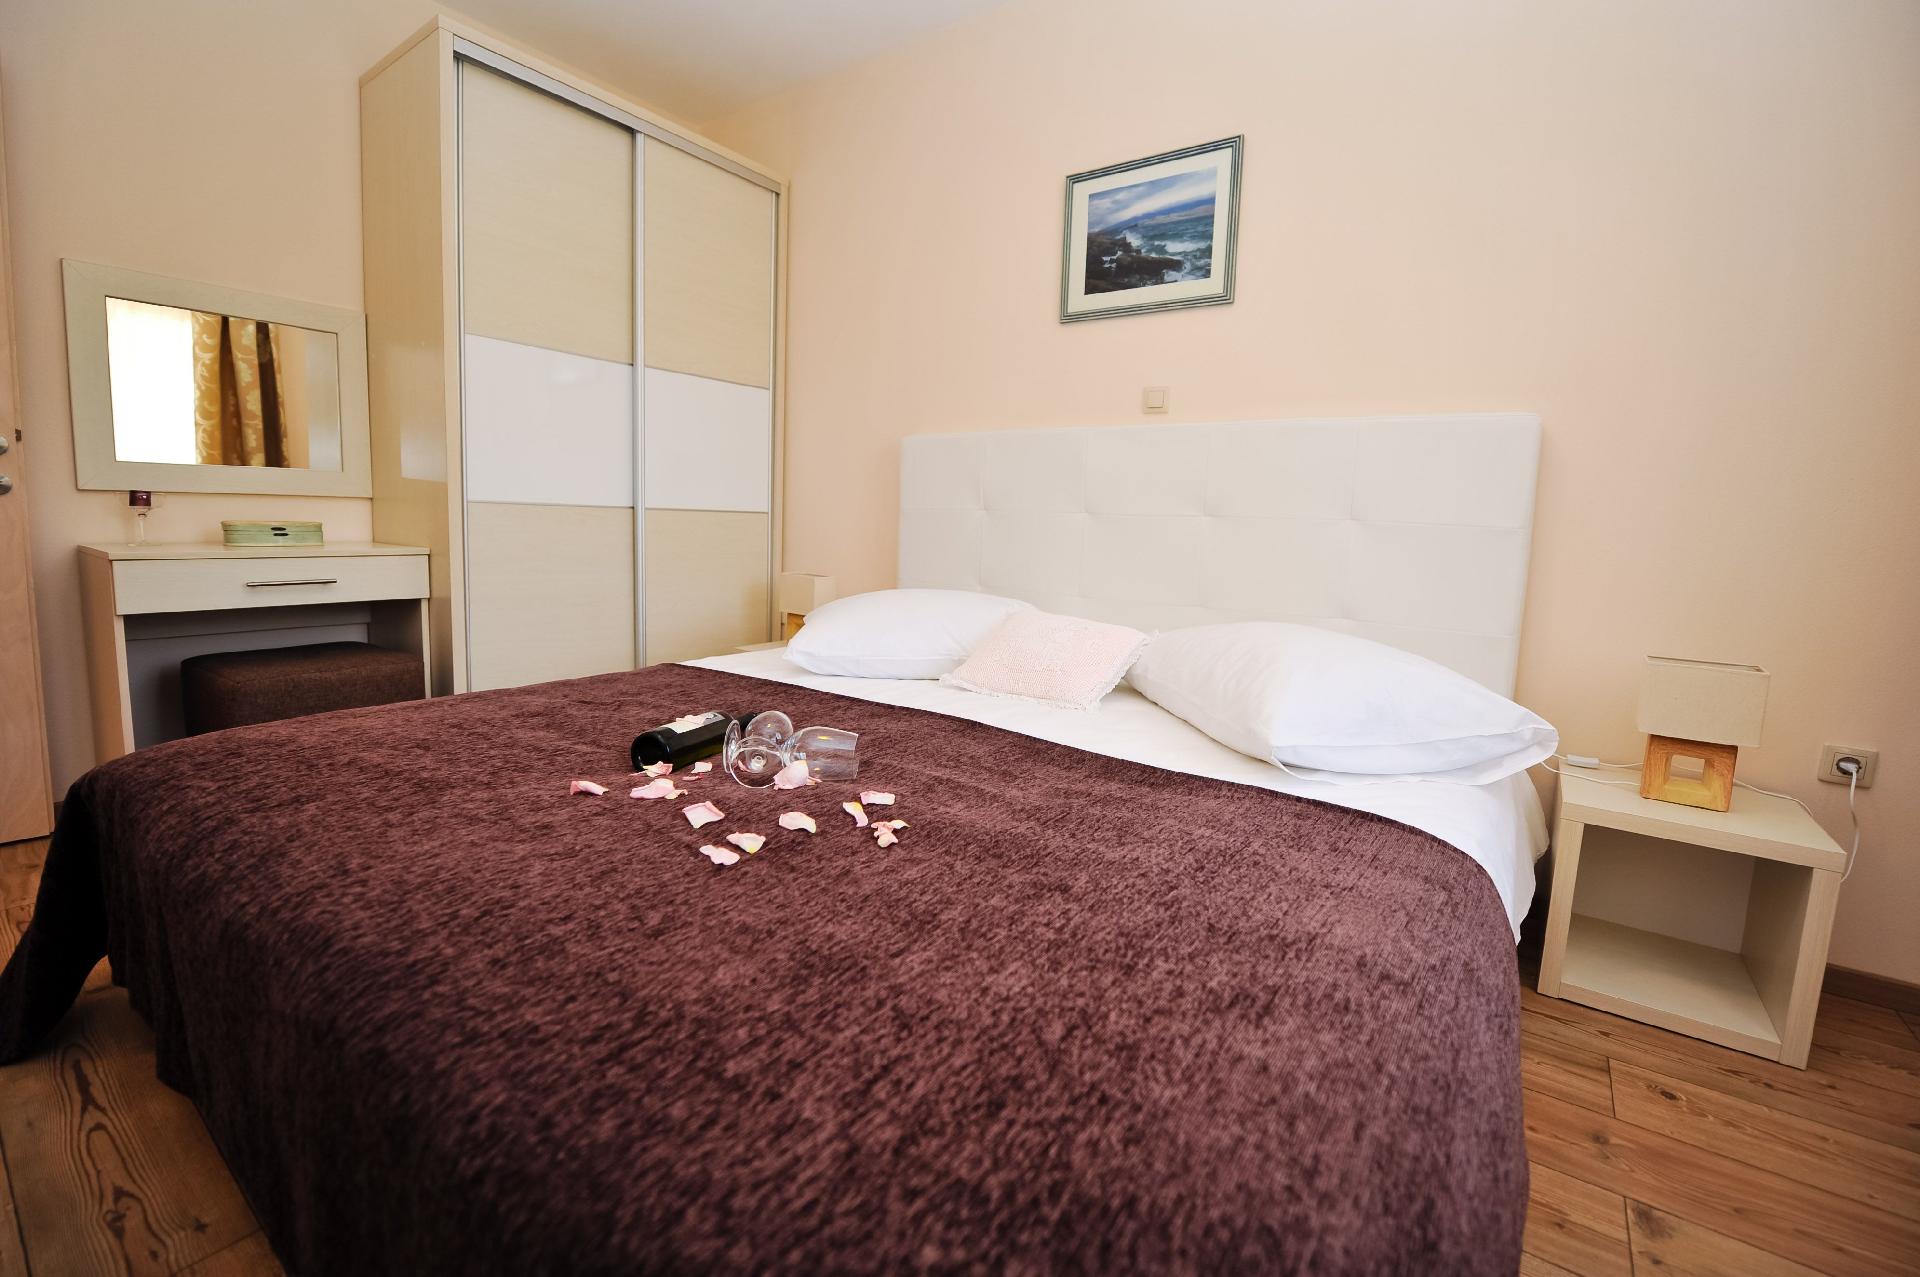 Ferienwohnung für 6 Personen ca. 65 m² i Ferienhaus in Kroatien